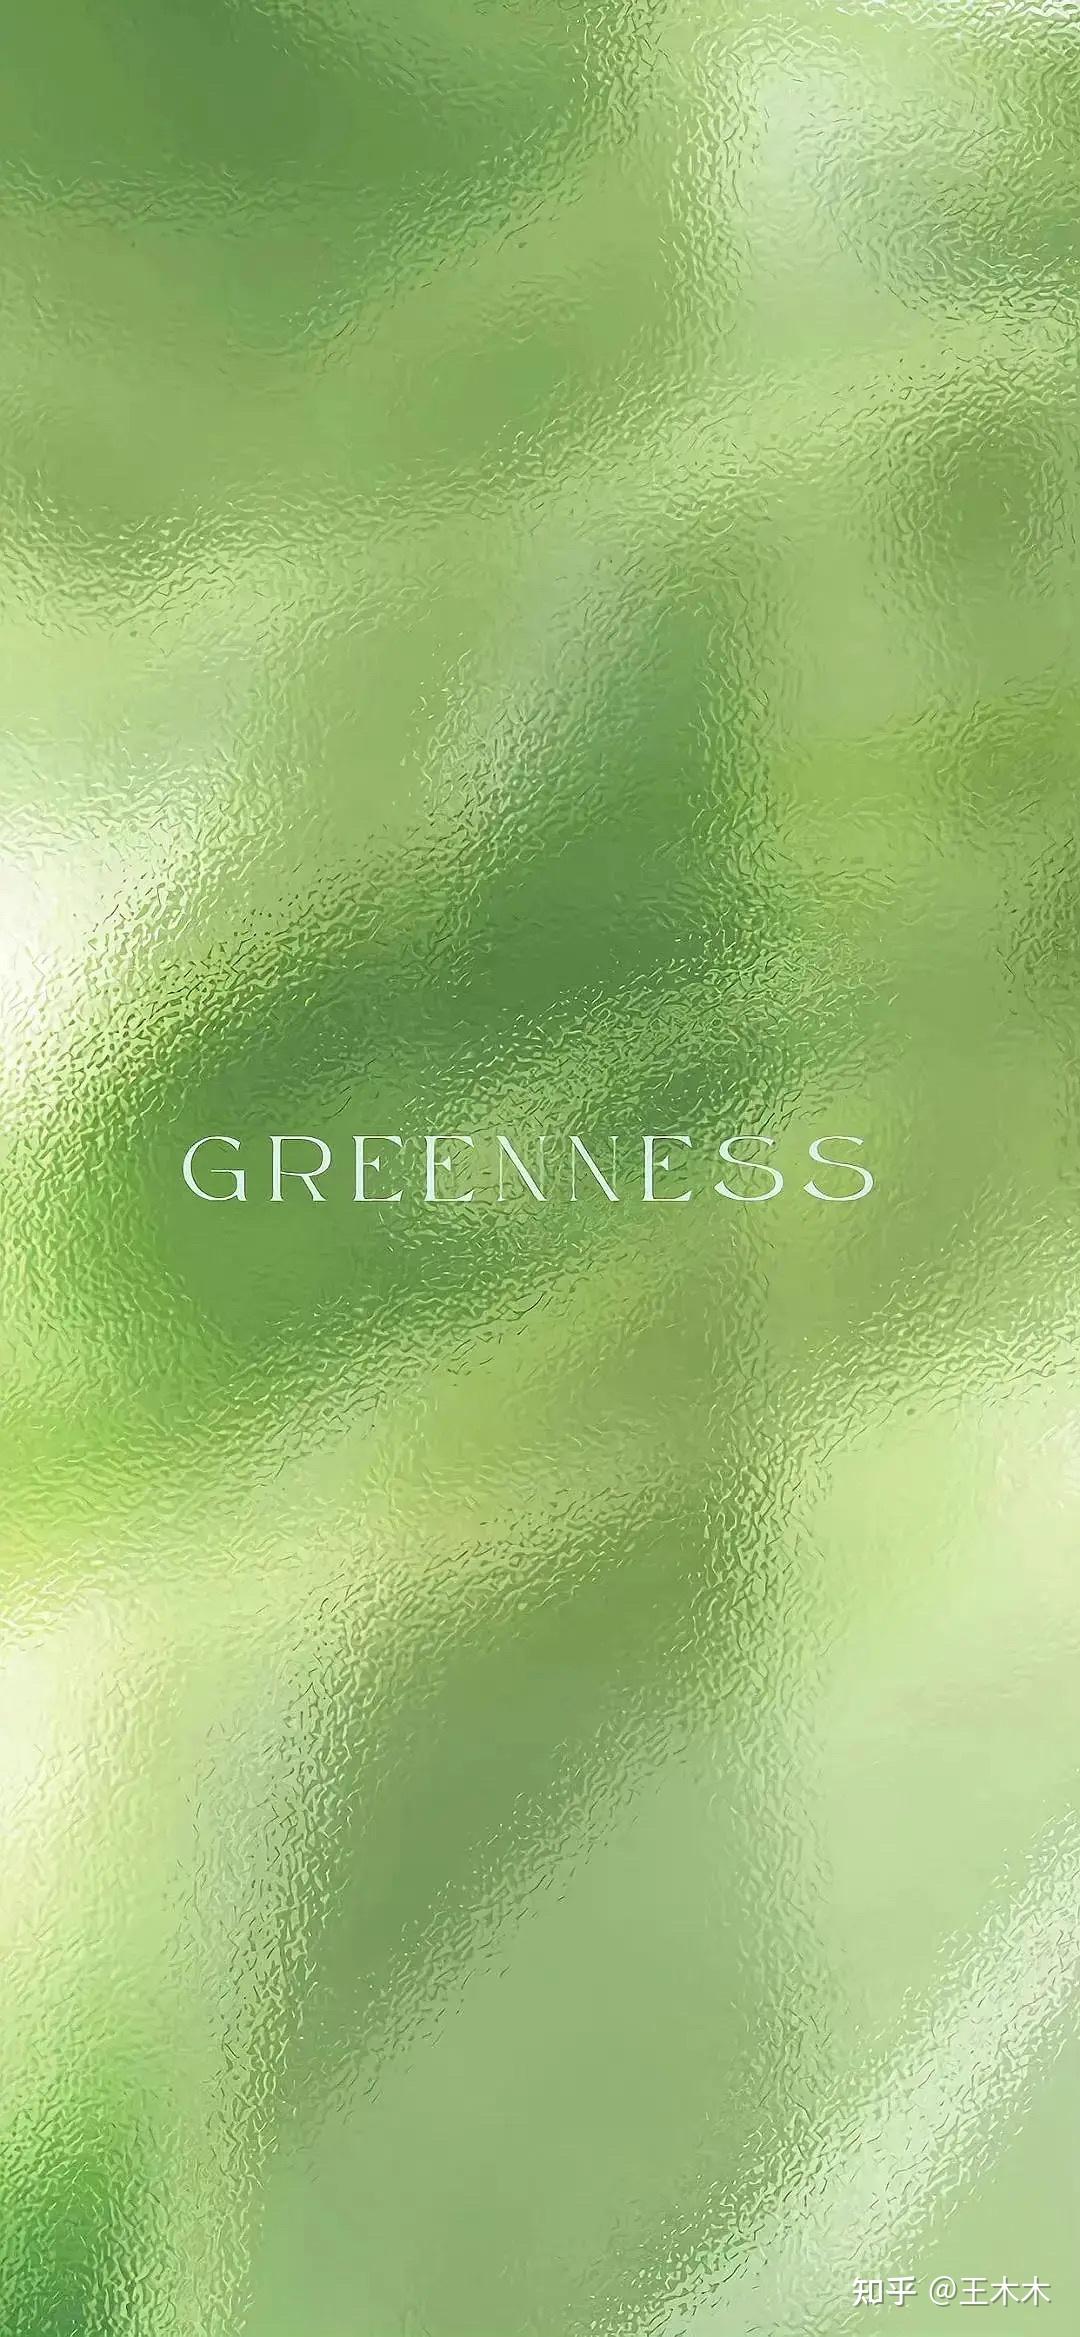 壁纸1400×1050绿色系列 绿叶篇 壁纸23壁纸,绿色系列 绿叶篇壁纸图片-动物壁纸-动物图片素材-桌面壁纸